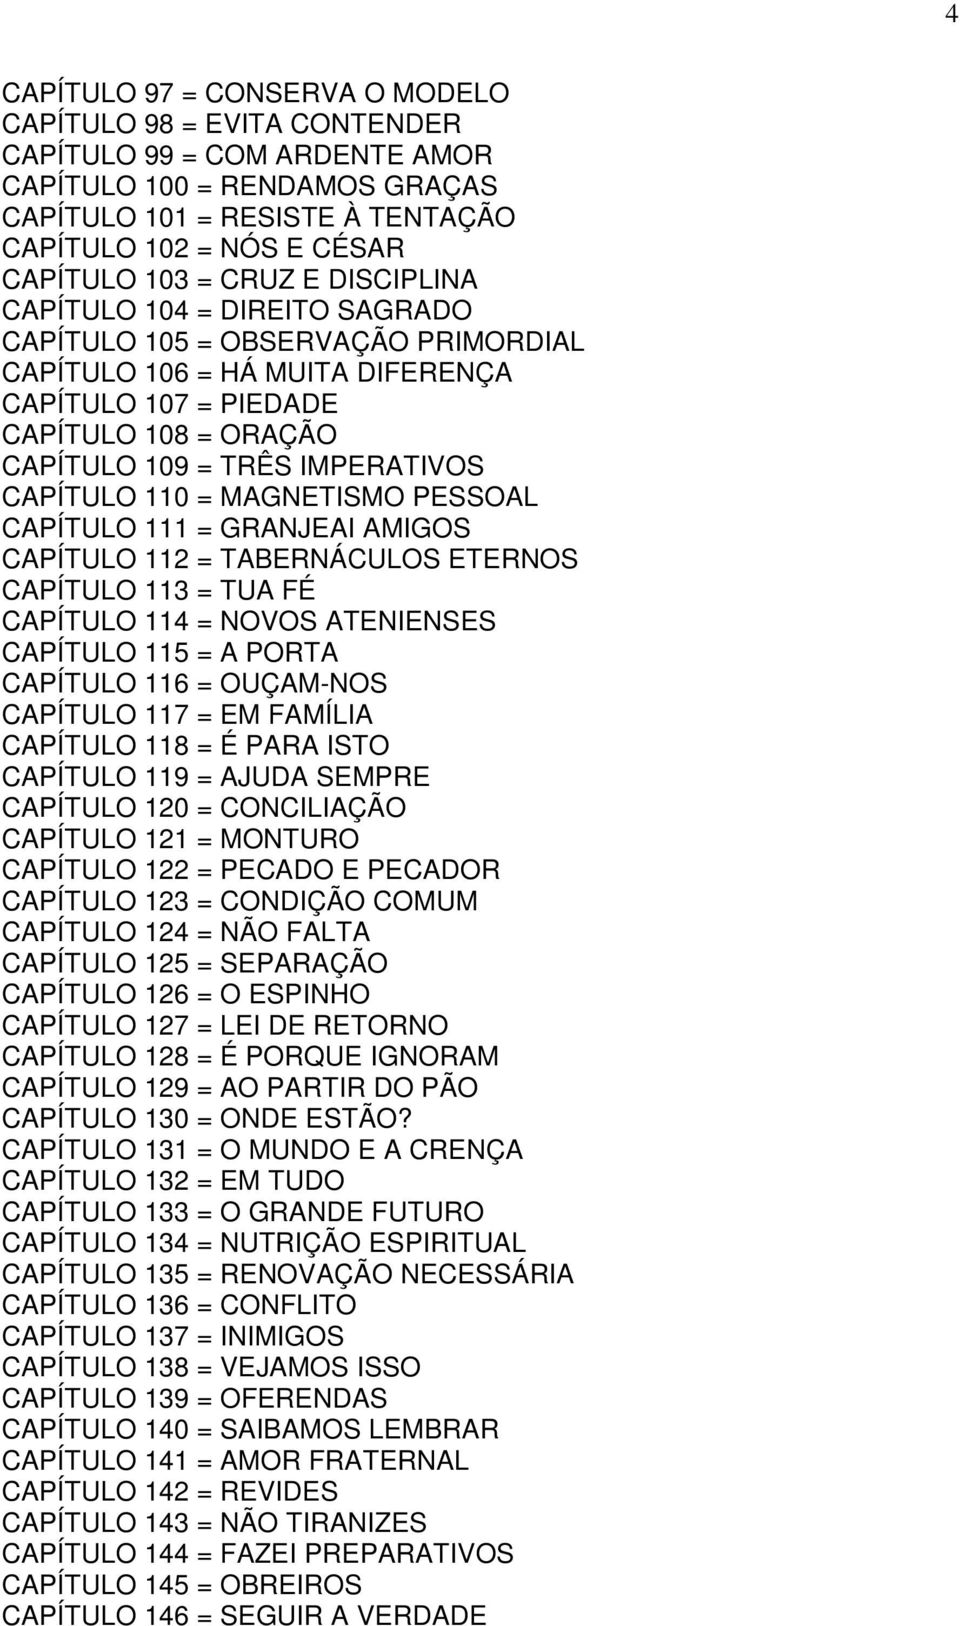 CAPÍTULO 110 = MAGNETISMO PESSOAL CAPÍTULO 111 = GRANJEAI AMIGOS CAPÍTULO 112 = TABERNÁCULOS ETERNOS CAPÍTULO 113 = TUA FÉ CAPÍTULO 114 = NOVOS ATENIENSES CAPÍTULO 115 = A PORTA CAPÍTULO 116 =